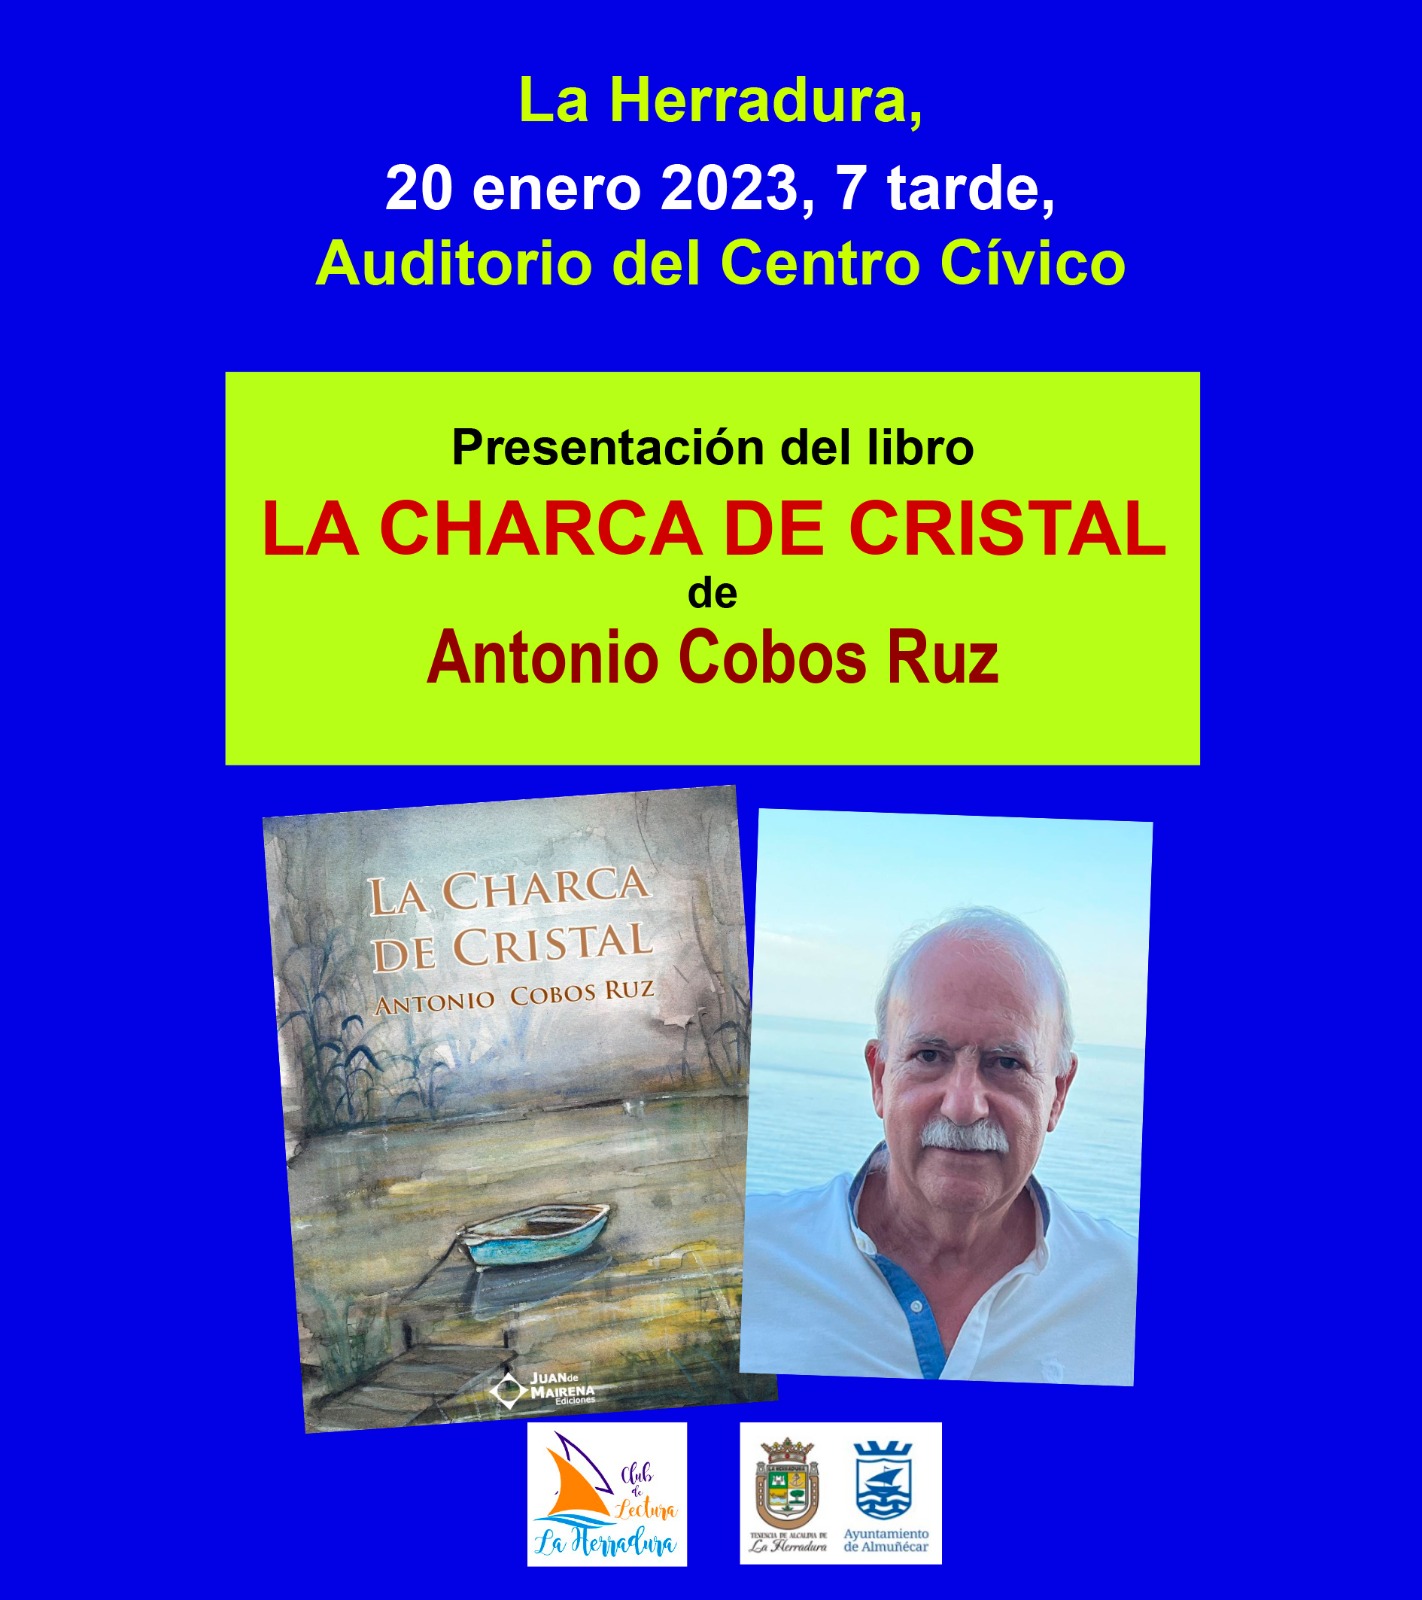 Una conferencia y la presentación de un libro entre las propuestas culturales en Almuñécar y La Herradura para el fin de semana 